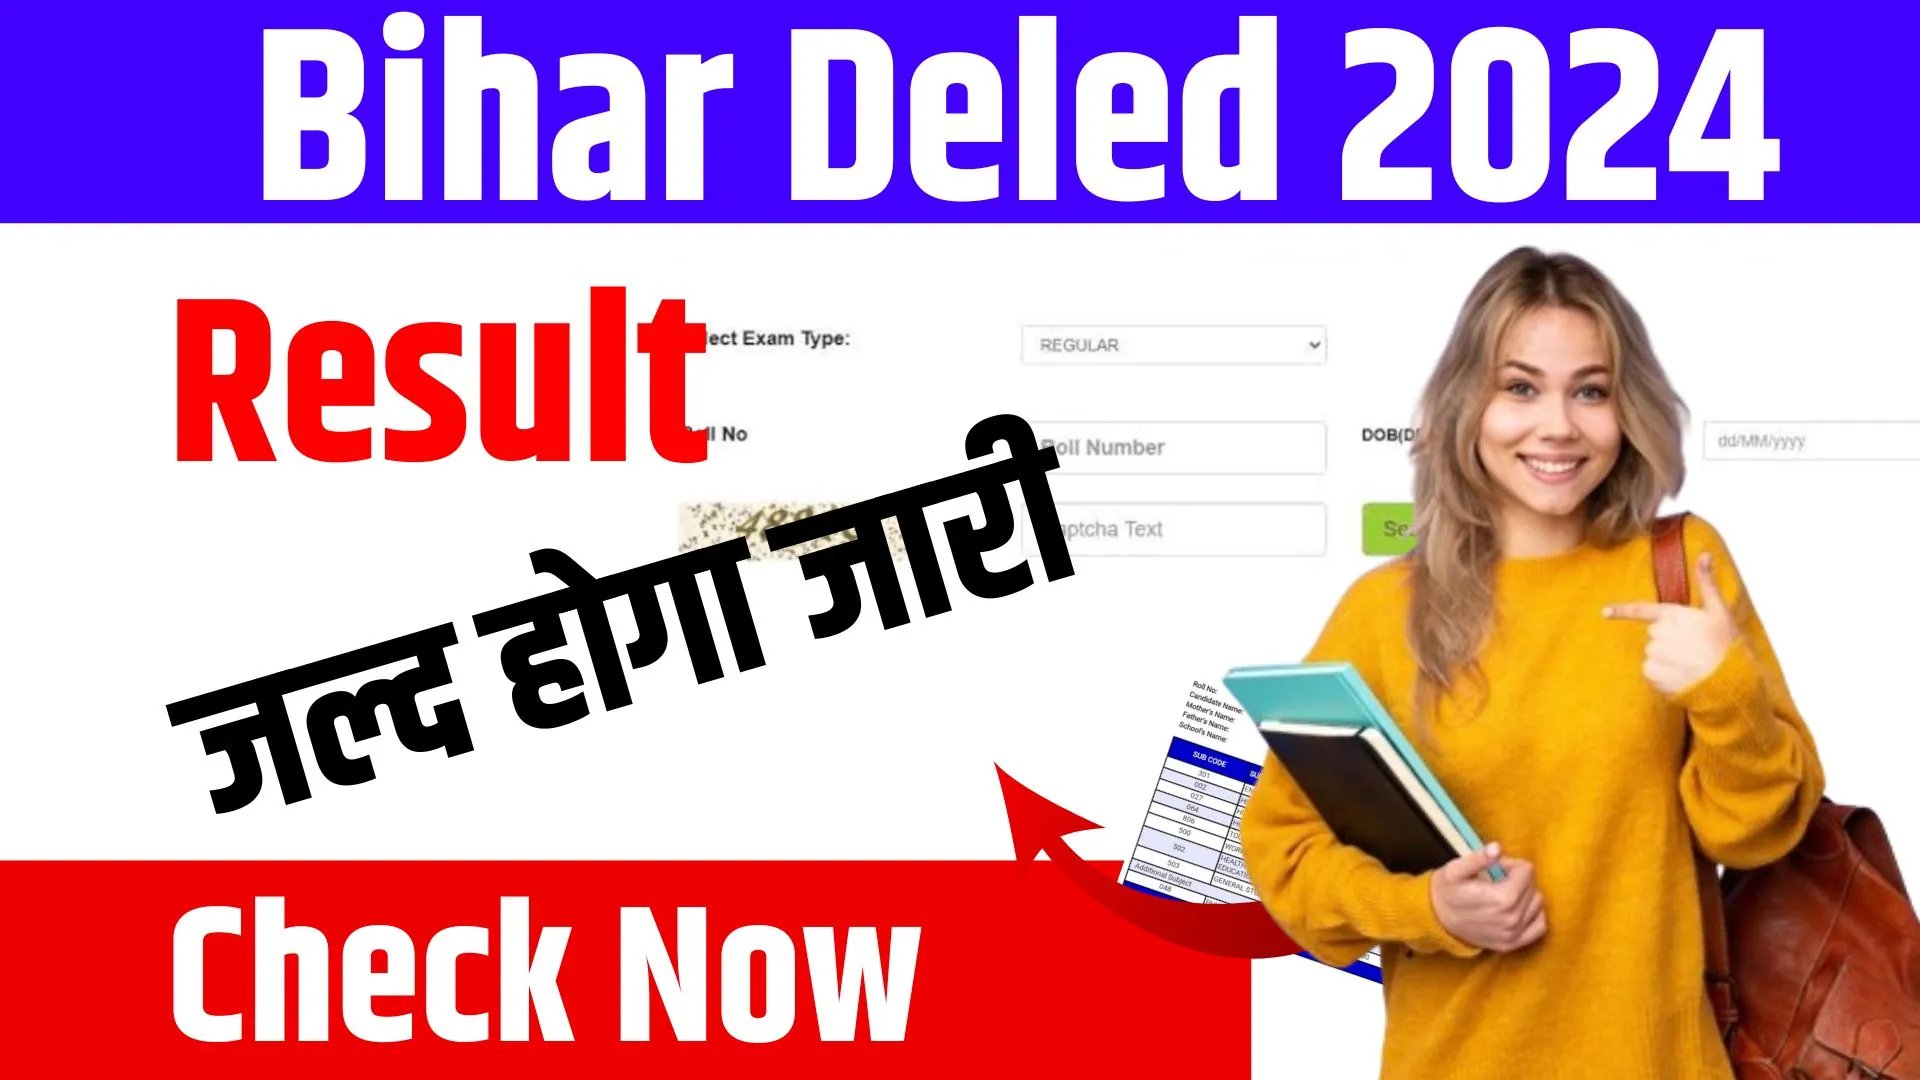 Bihar Deled Result 2024